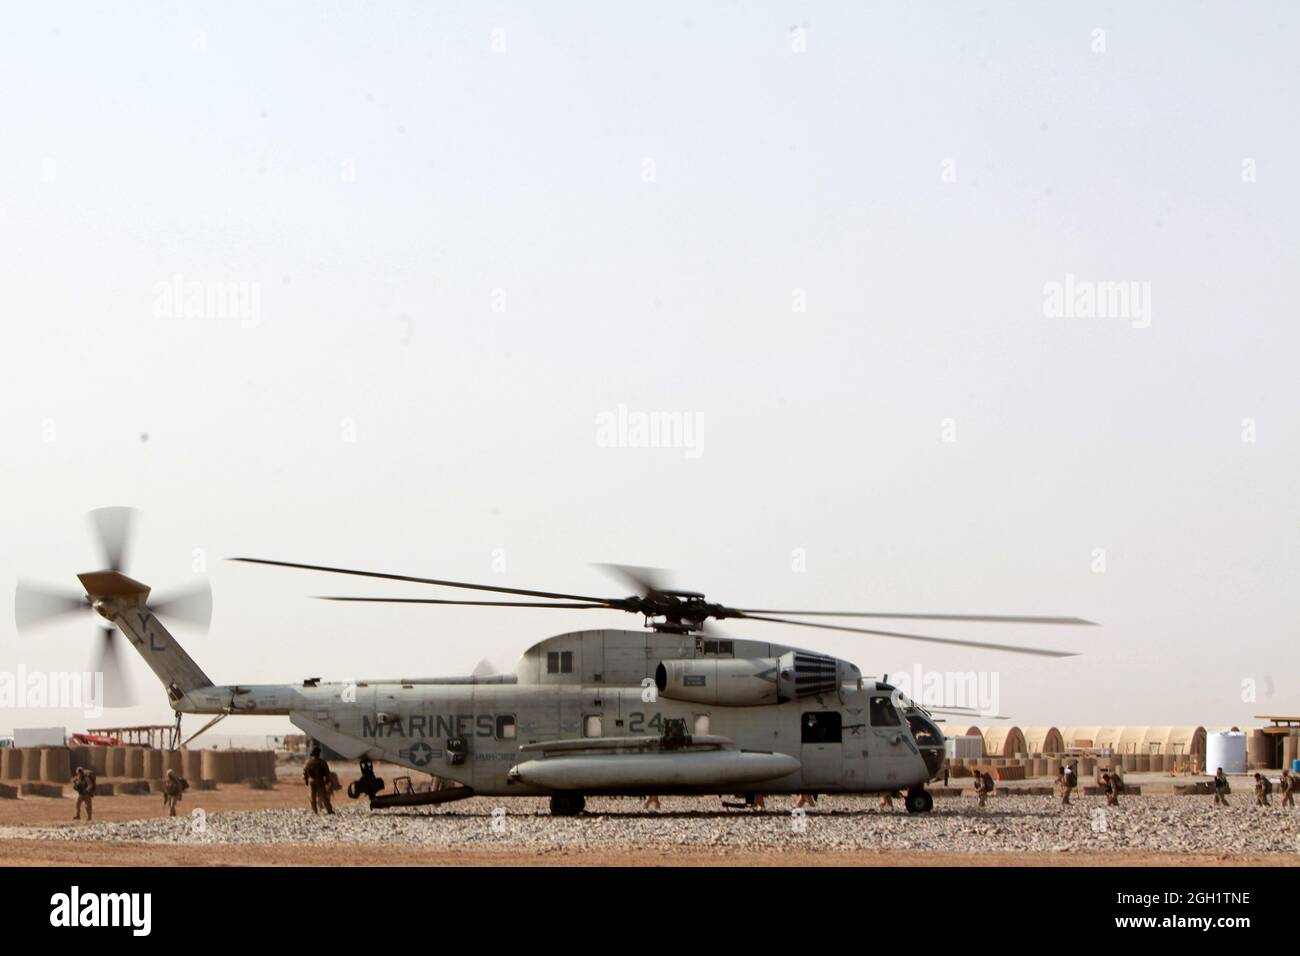 Le 20 juin 2012, les Marines des États-Unis du 3e Bataillon de reconnaissance légère (3e LAR) embarquèrent à bord d’un hélicoptère CH-53e de stalinlion de mer du 466 e Escadron d’hélicoptères lourds maritimes (HMH), 3e Escadre d’aéronefs maritimes (Forward), pour exécuter l’Op Halberd V dans la province de Helmand, en Afghanistan. Le HMLA-469 a assuré la reconnaissance aérienne et la sécurité des Marines de la 3e LAR pendant l'opération Halberd V afin d'empêcher la distribution de la contrebande à l'appui des opérations de lutte contre l'insurrection. Banque D'Images